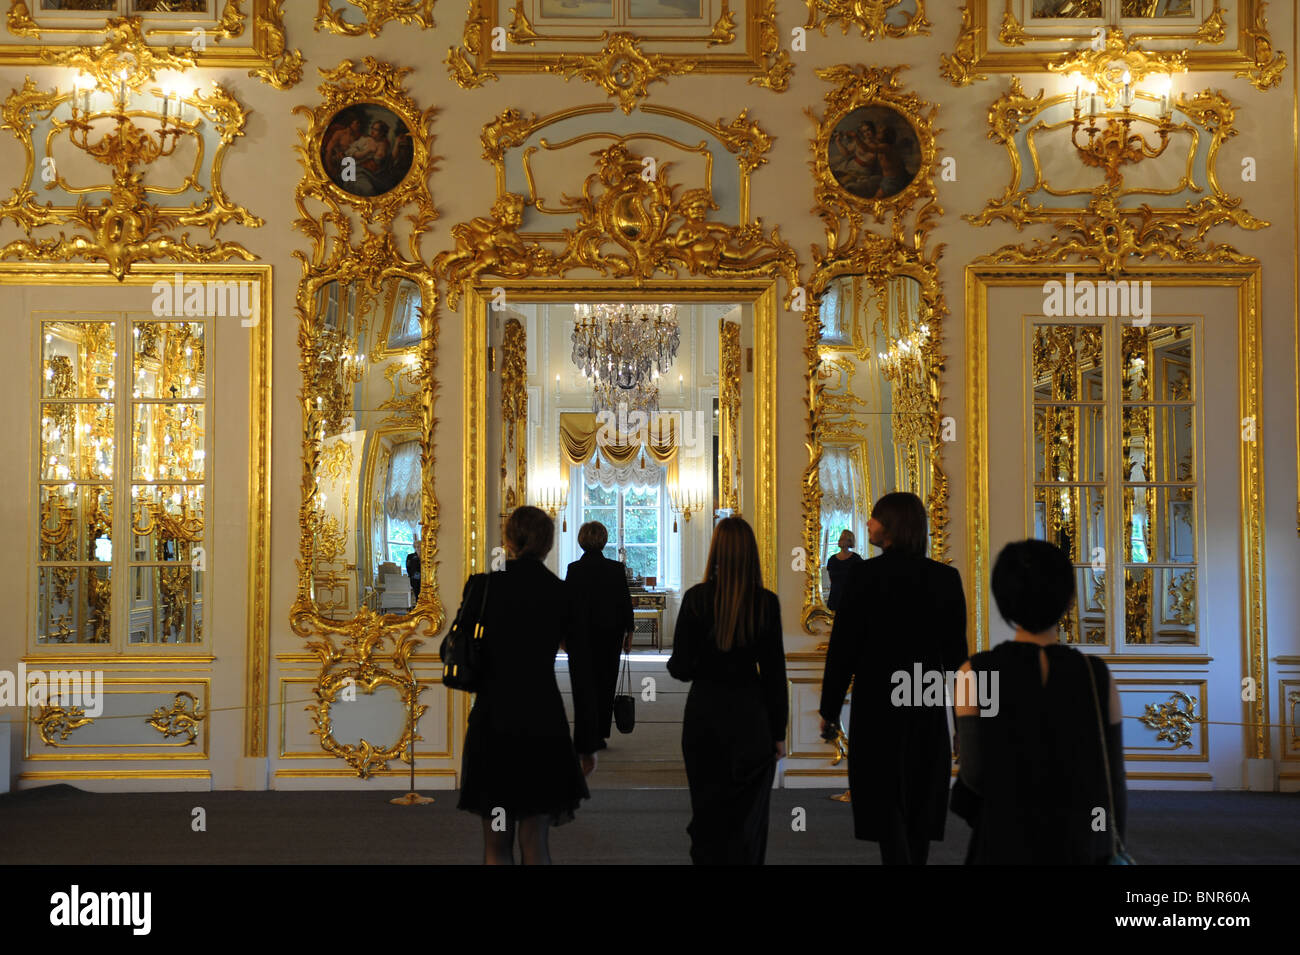 Le Festival des Nuits blanches Montblanc au Palais de Peterhof, Saint Petersburg, Russie Banque D'Images